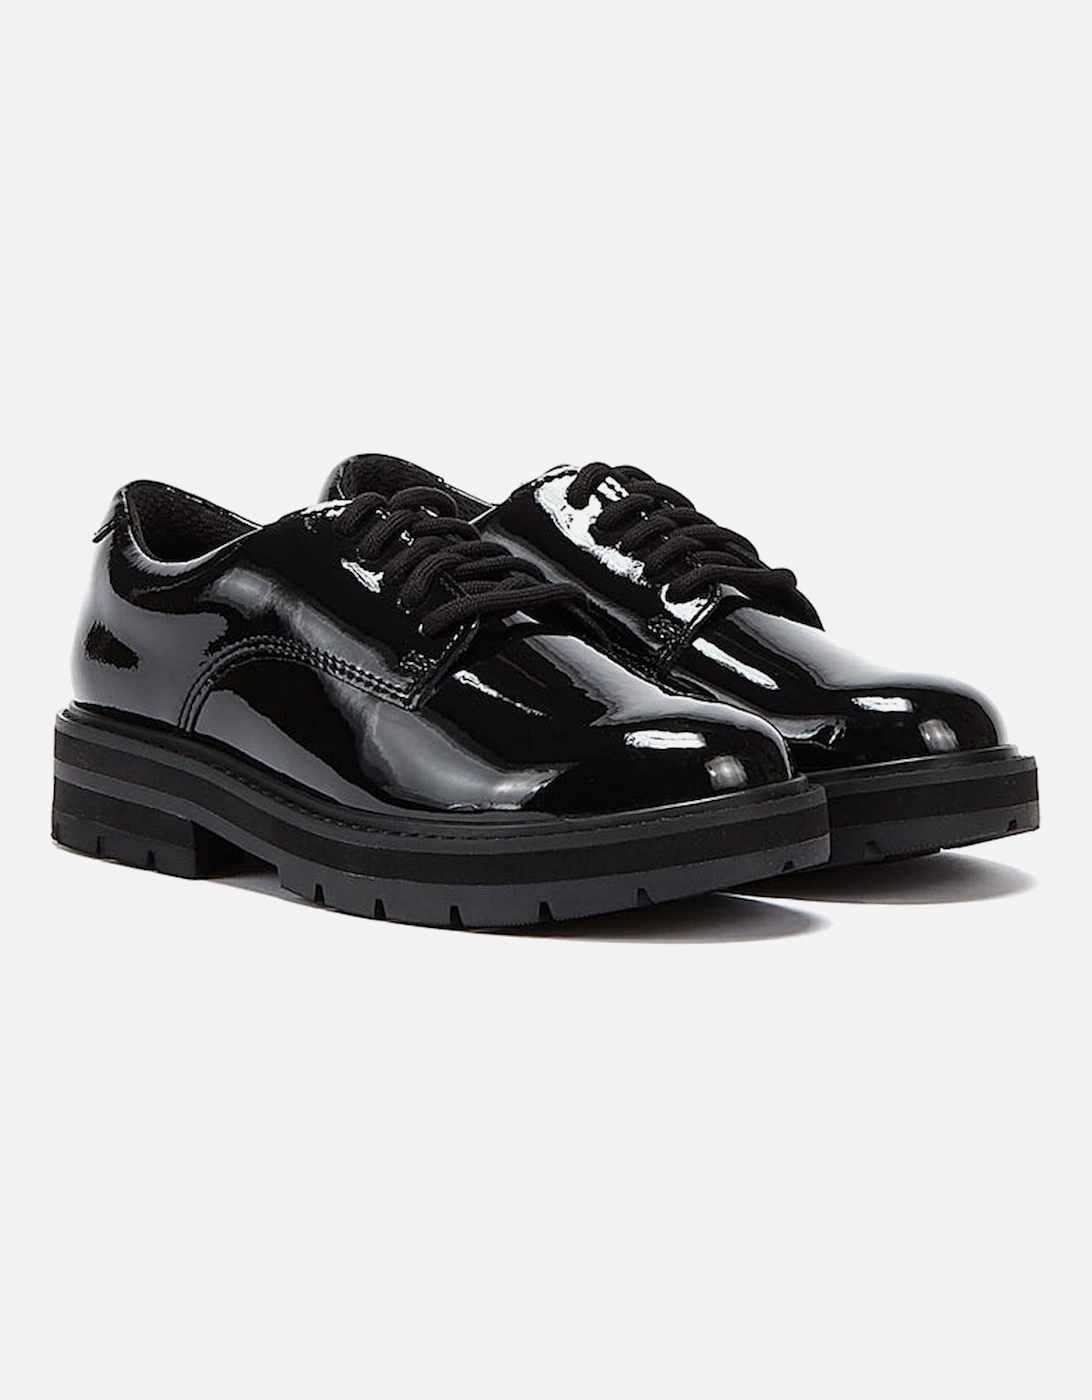 Prague Lace O Junior Black Shoes, 9 of 8